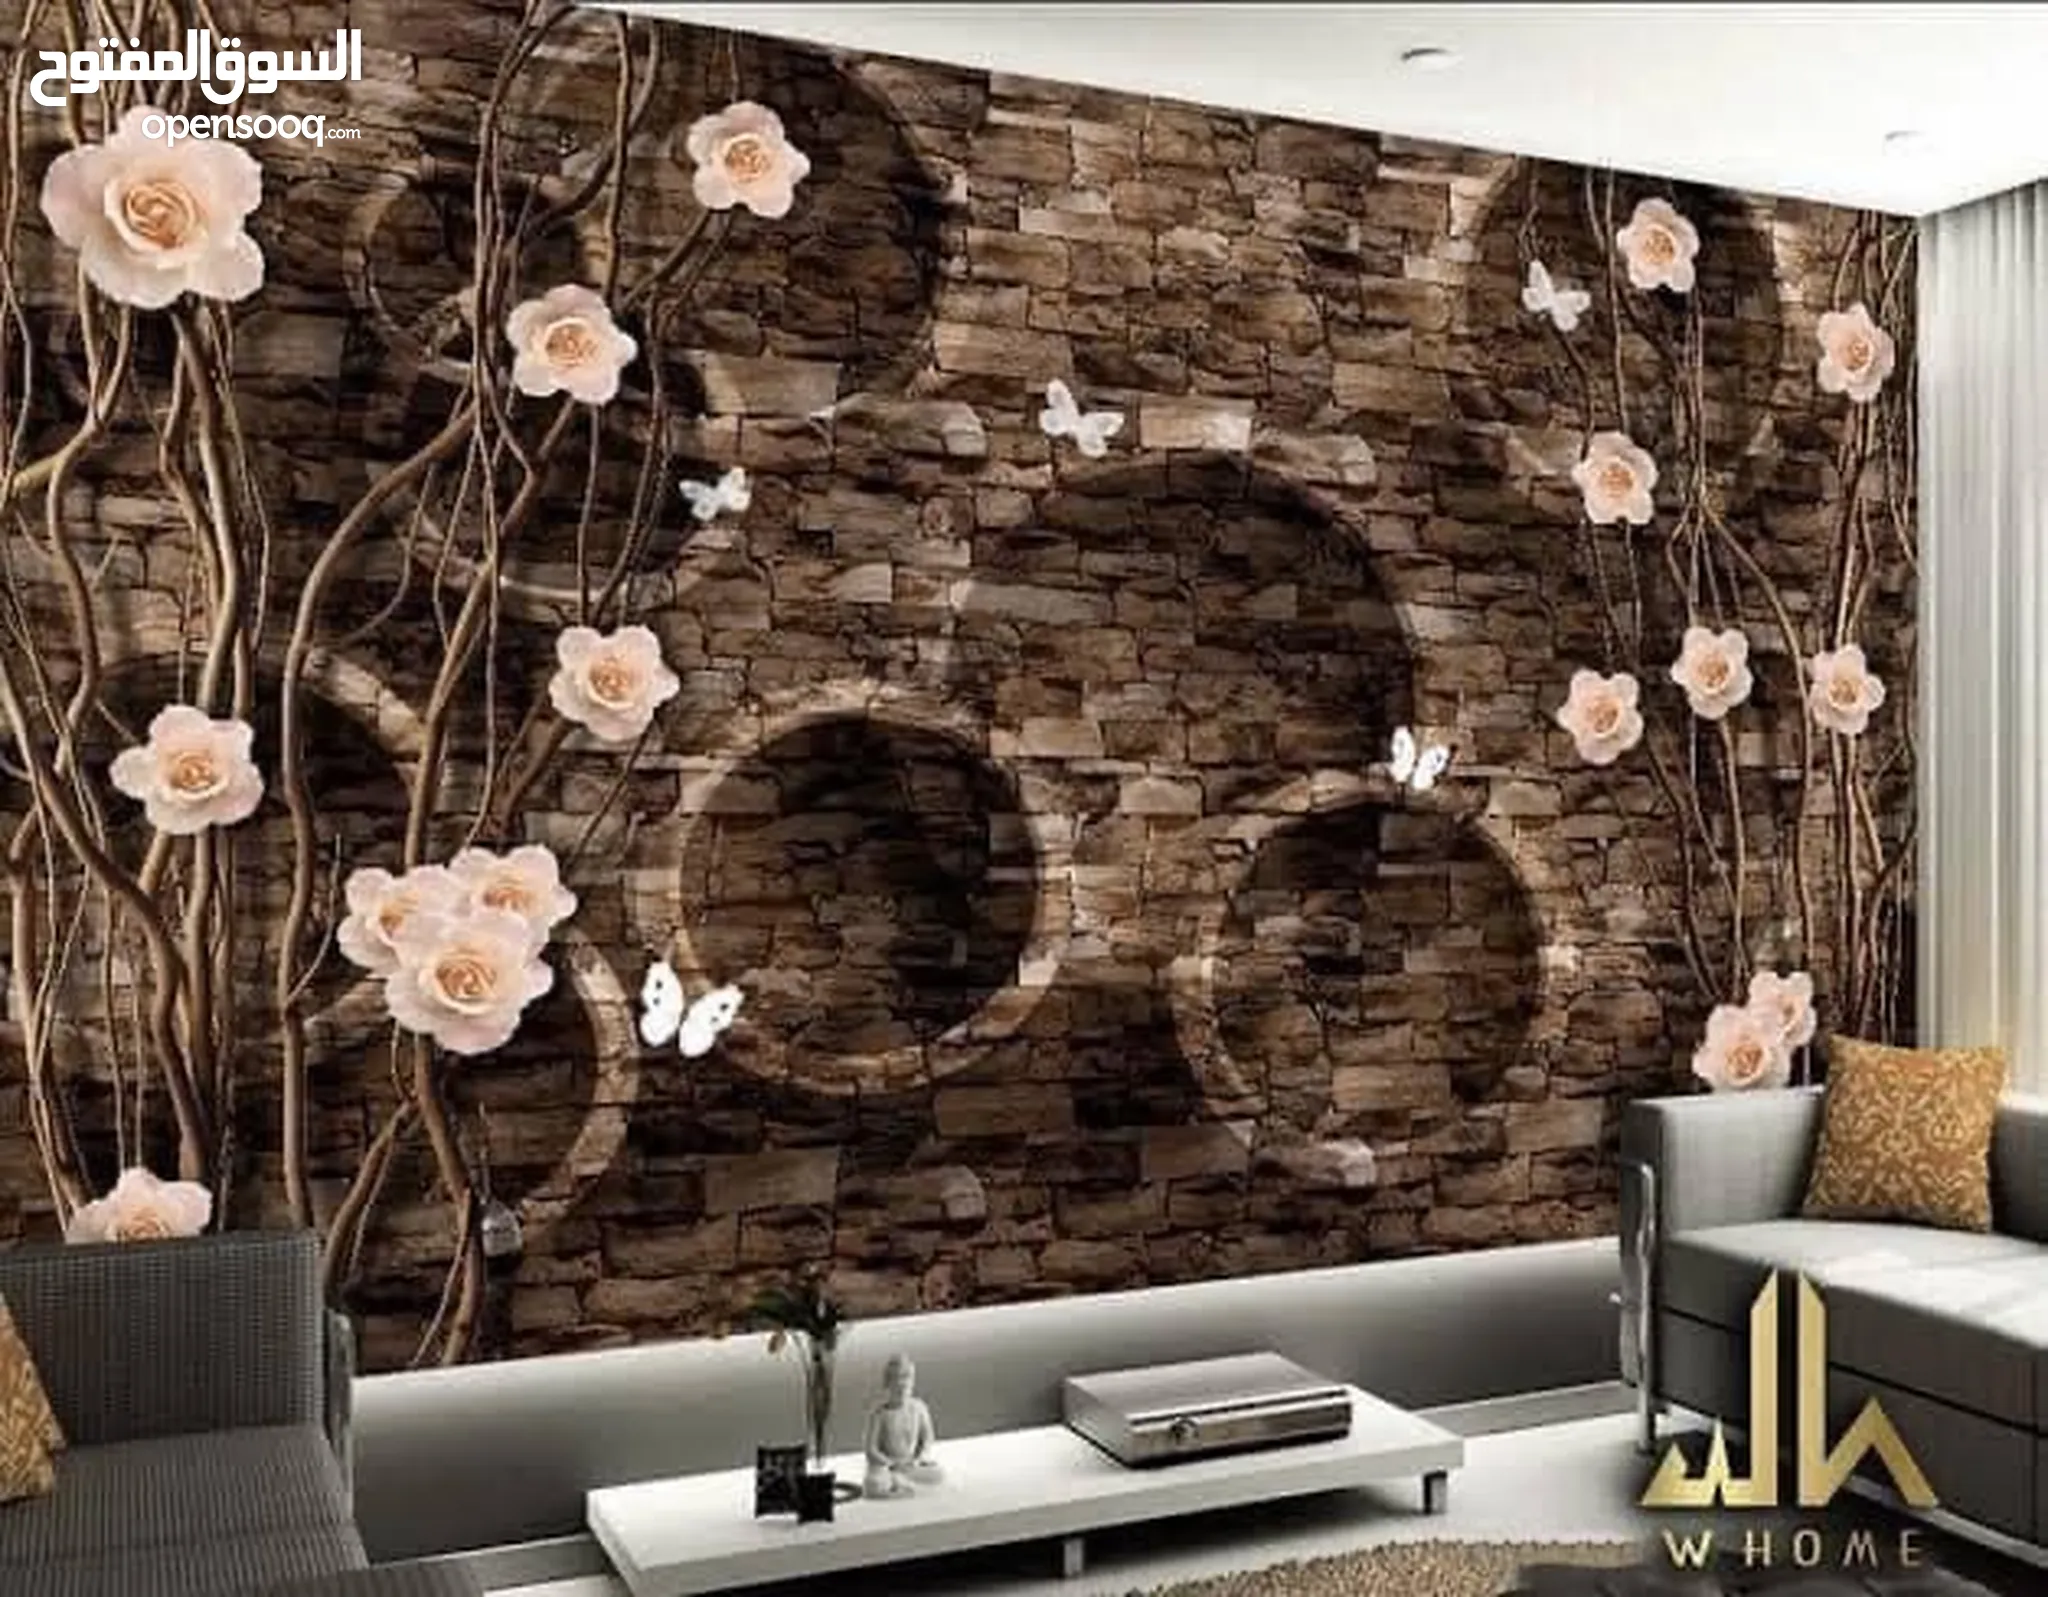 ورق جدران للبيع : ورق جدران 3D ثلاثي الابعاد من ايكيا بسعر رخيص : الكويت |  السوق المفتوح